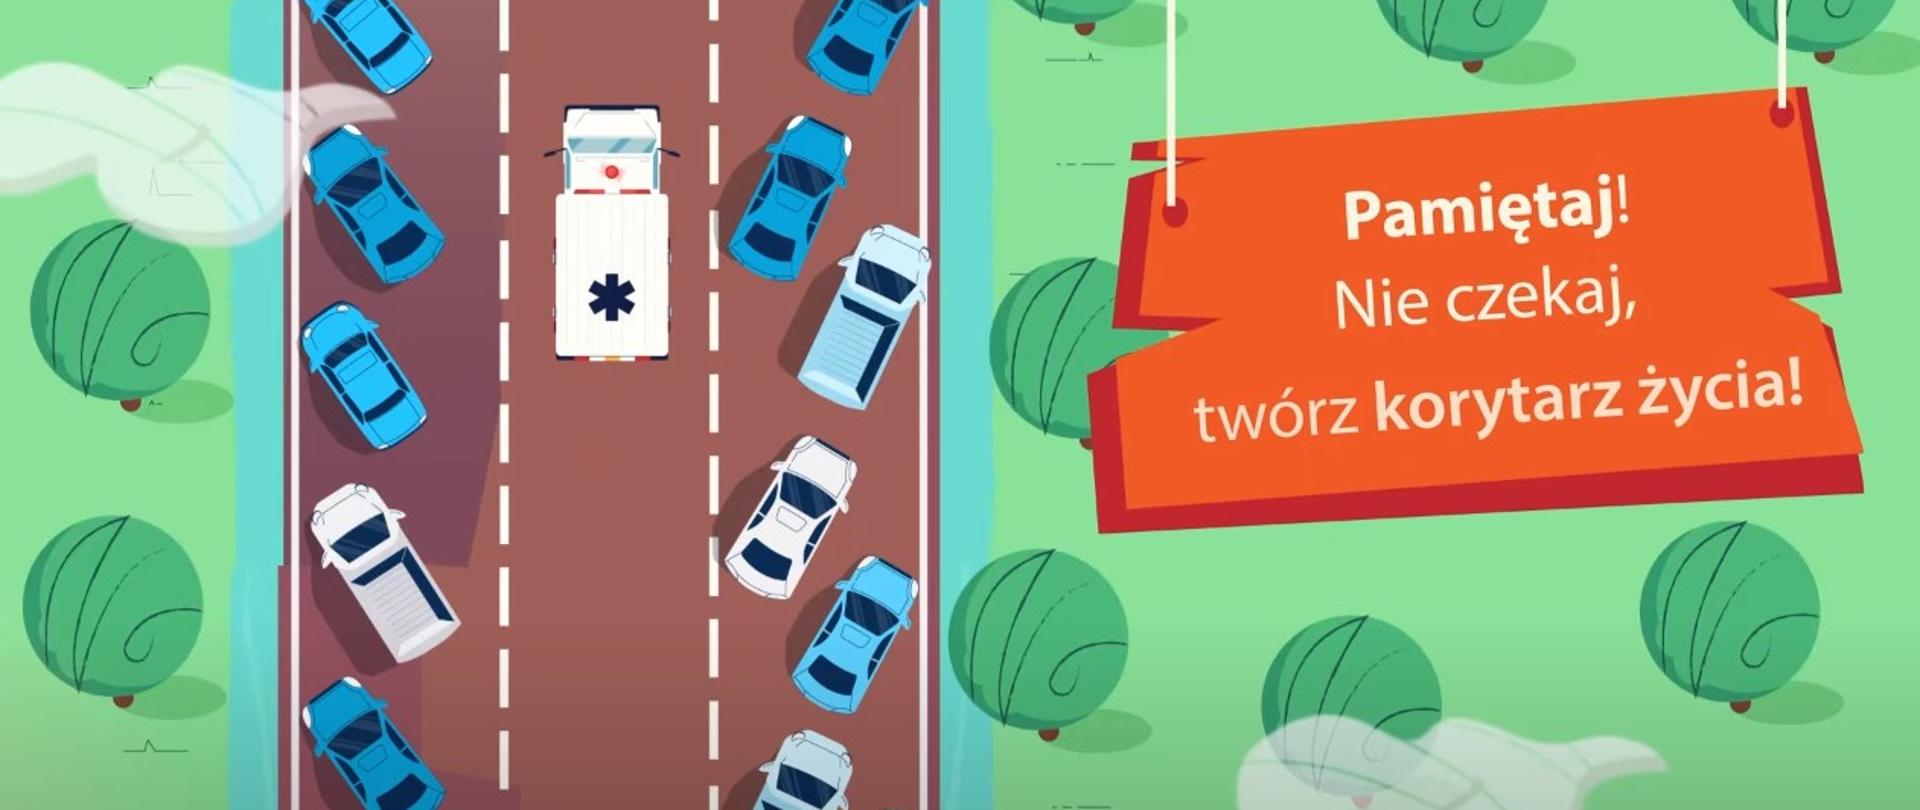 Infografika na której widać jak pojazd uprzywilejowany jedzie korytarzem życia utworzonym przez inne pojazdy